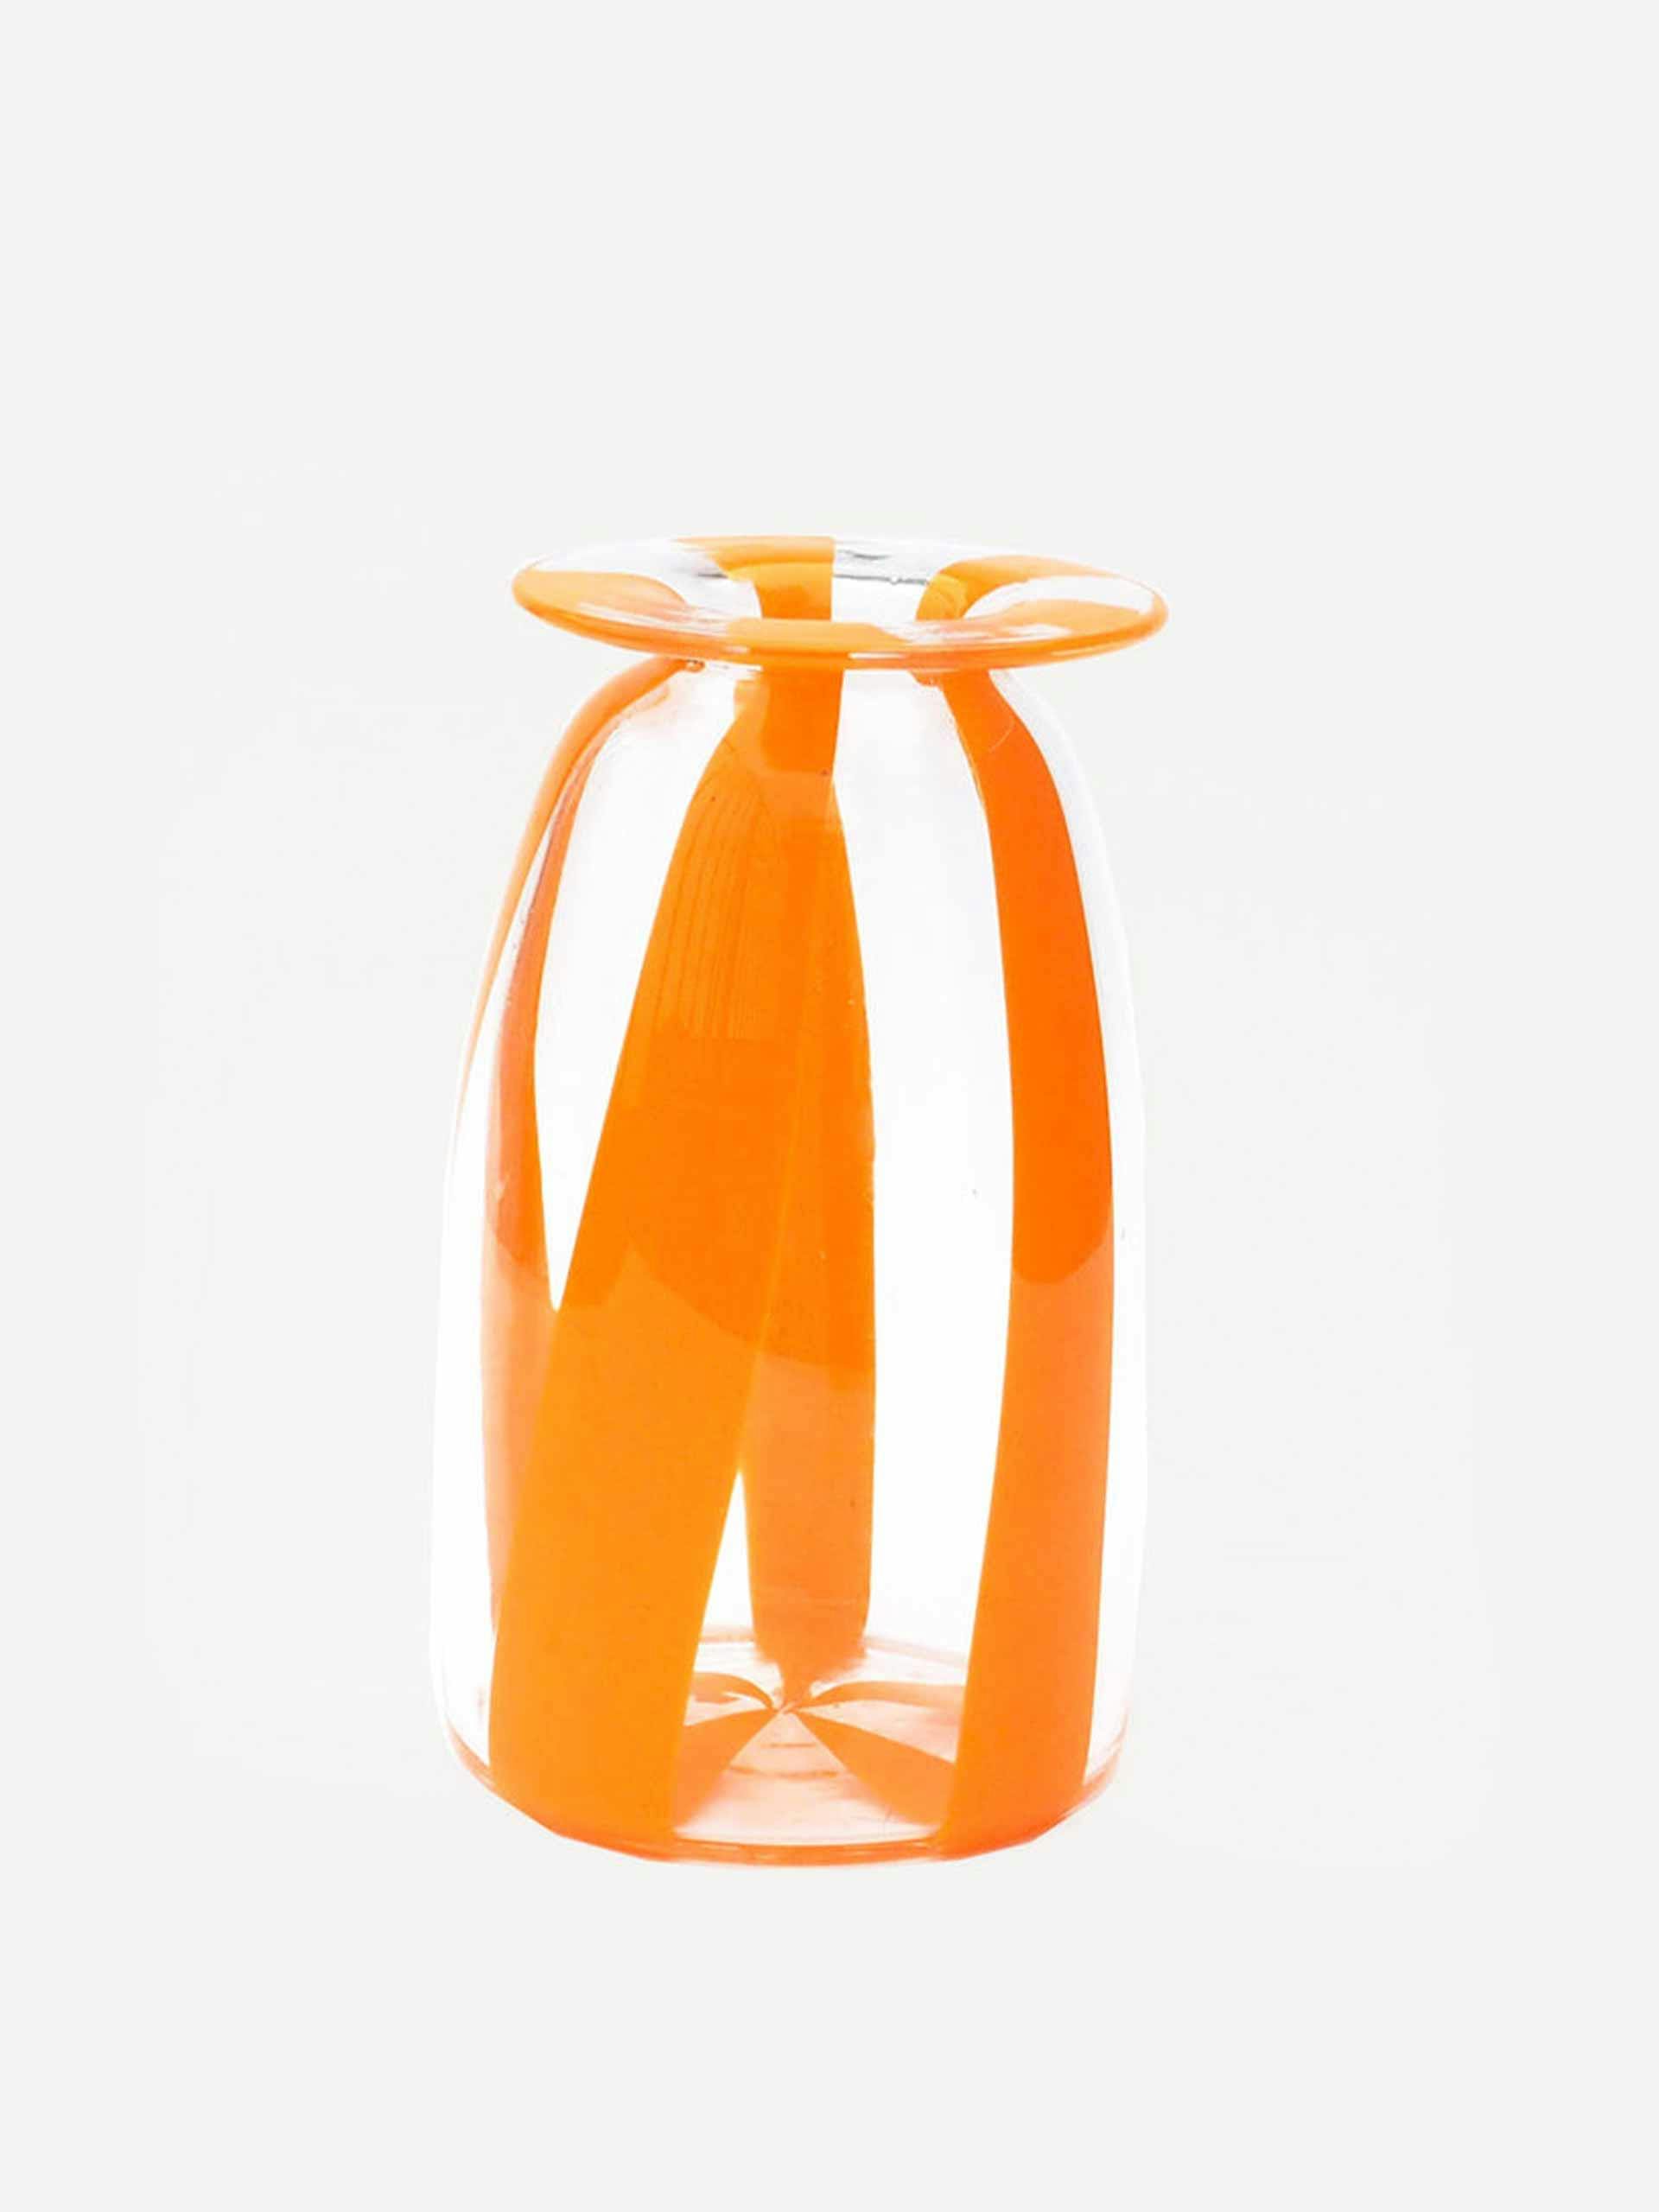 Orange striped glass vase